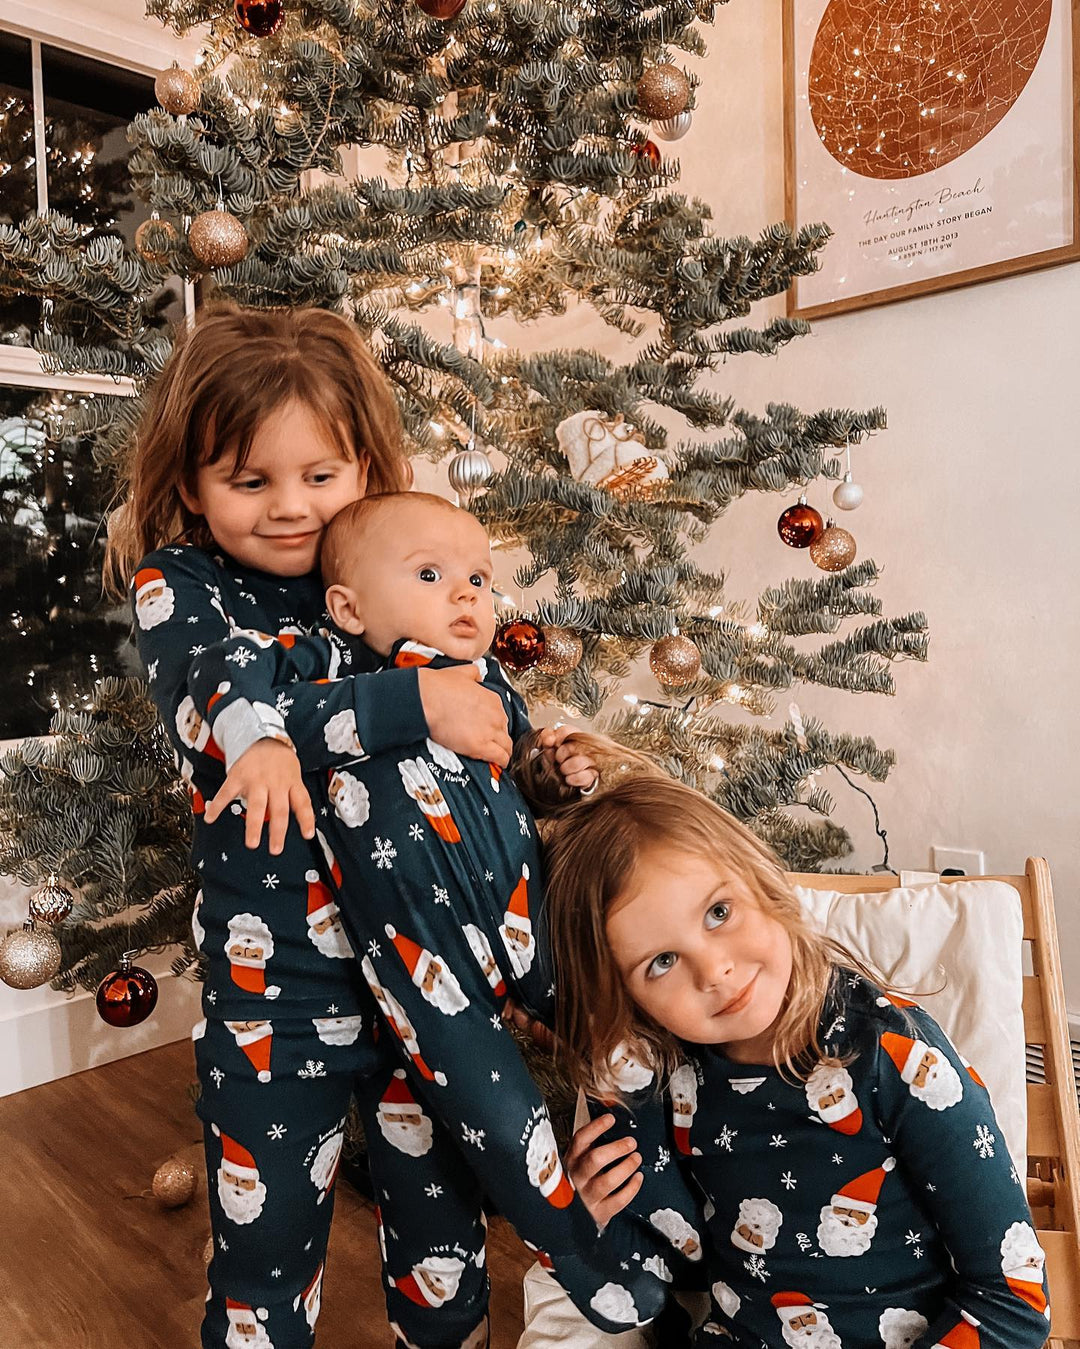 Julenisse-hette-Onesies Familiematchende pyjamas (med hundeklær)